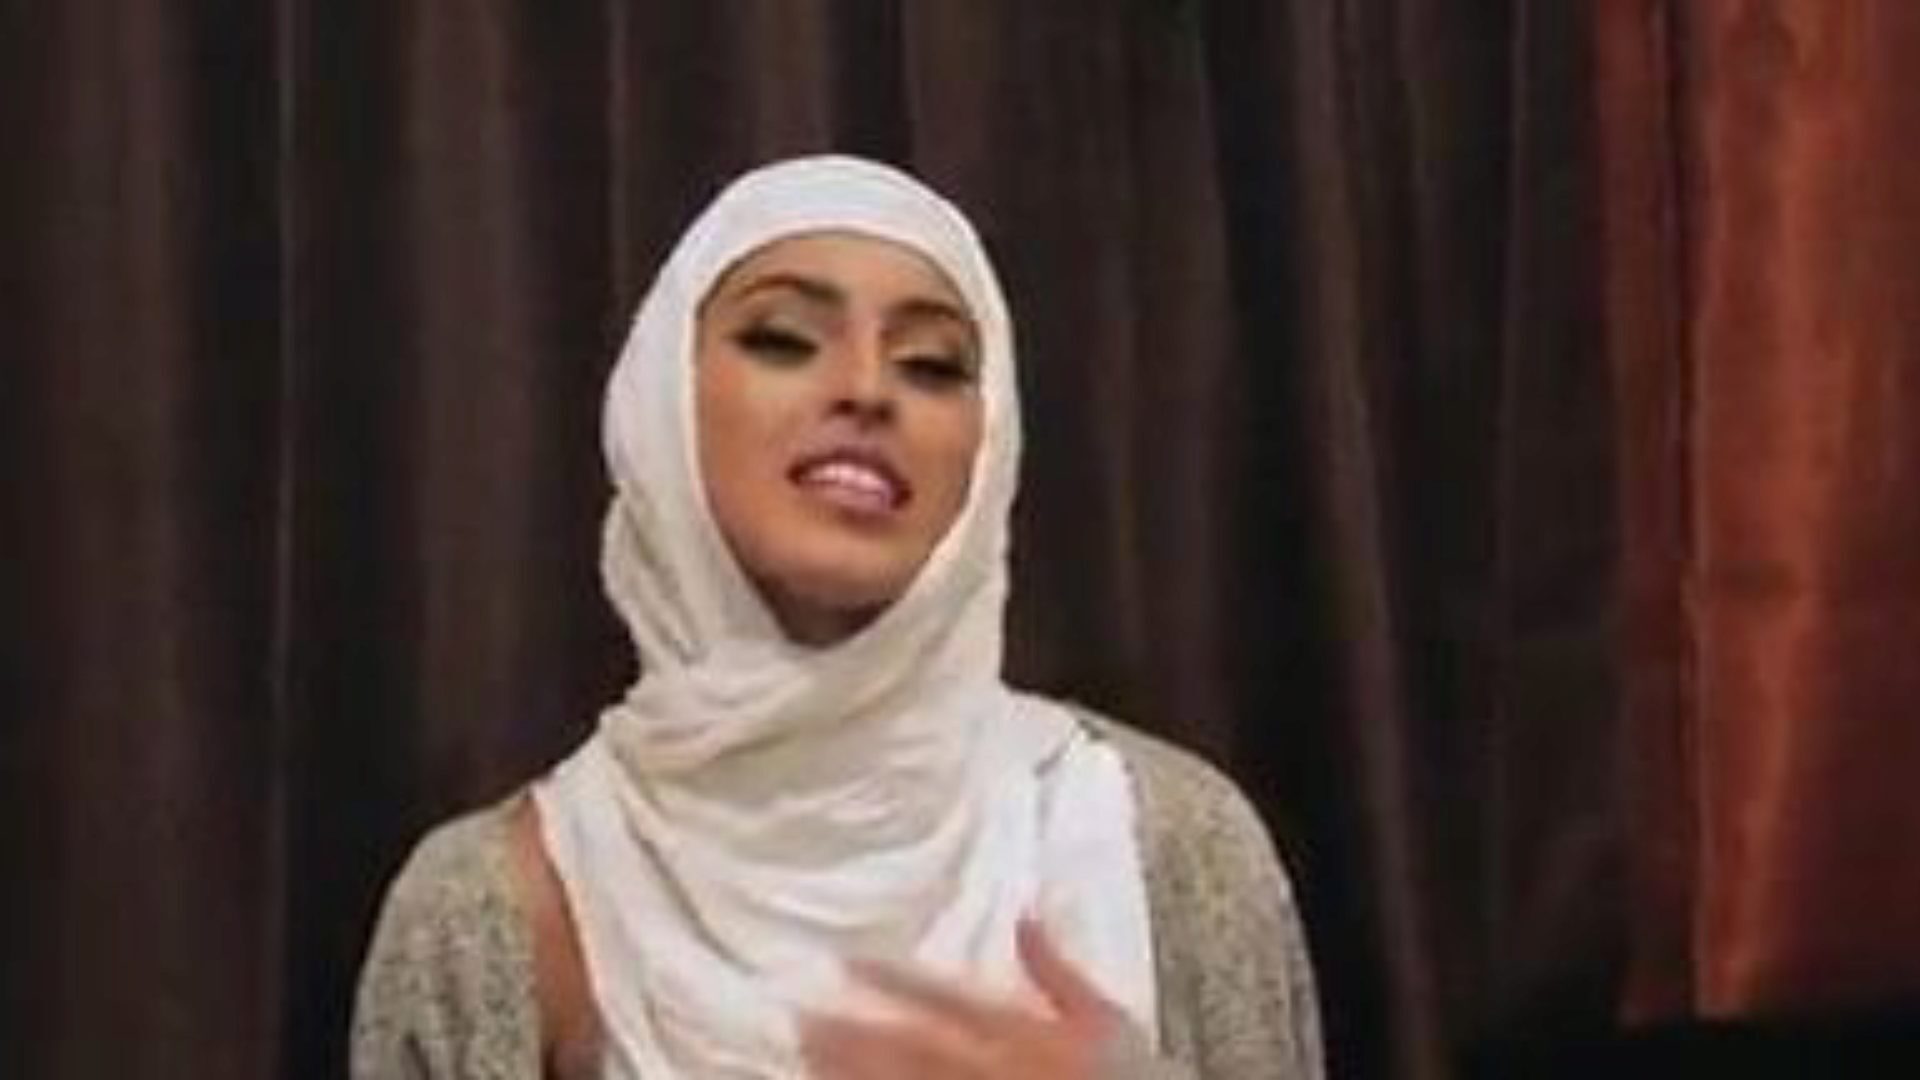 filles inexpérimentées timides baisent dans leurs hijabs: porno gratuit 5e regardez des filles timides inexpérimentées baiser dans leur épisode de hijabs sur xhamster - l'archive ultime de xnxx gratuits et bel ami vidéos de tube porno hardcore